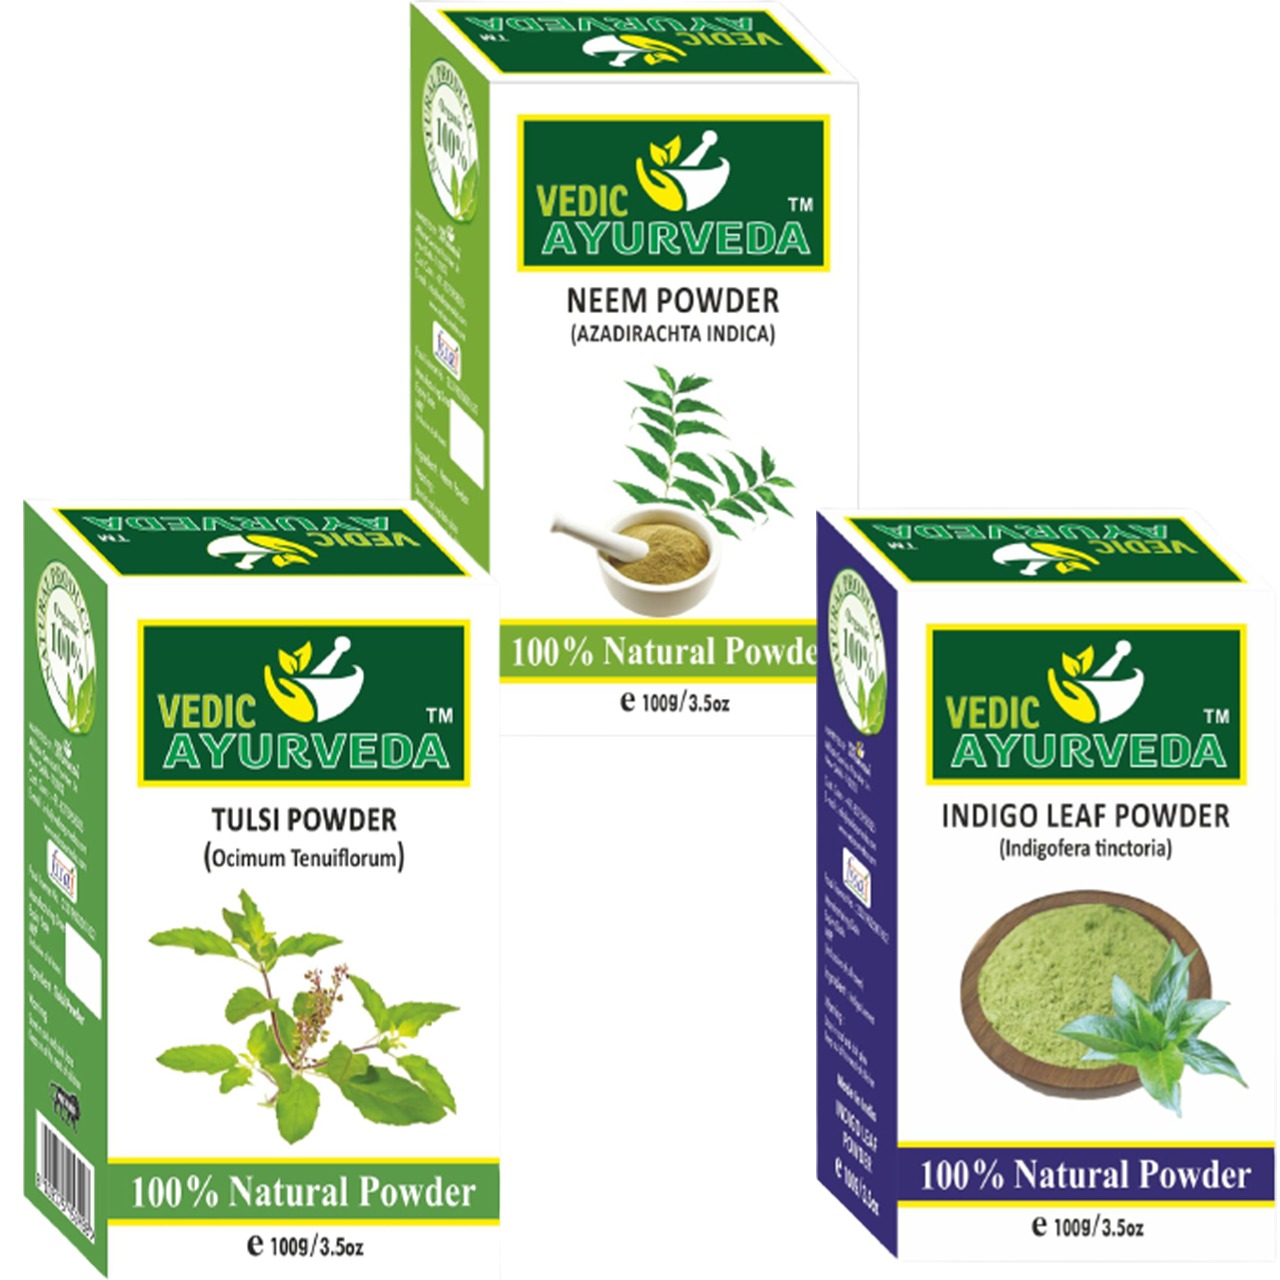 vedicayurveda tusli powder, indigo leaf powder and neem powder box